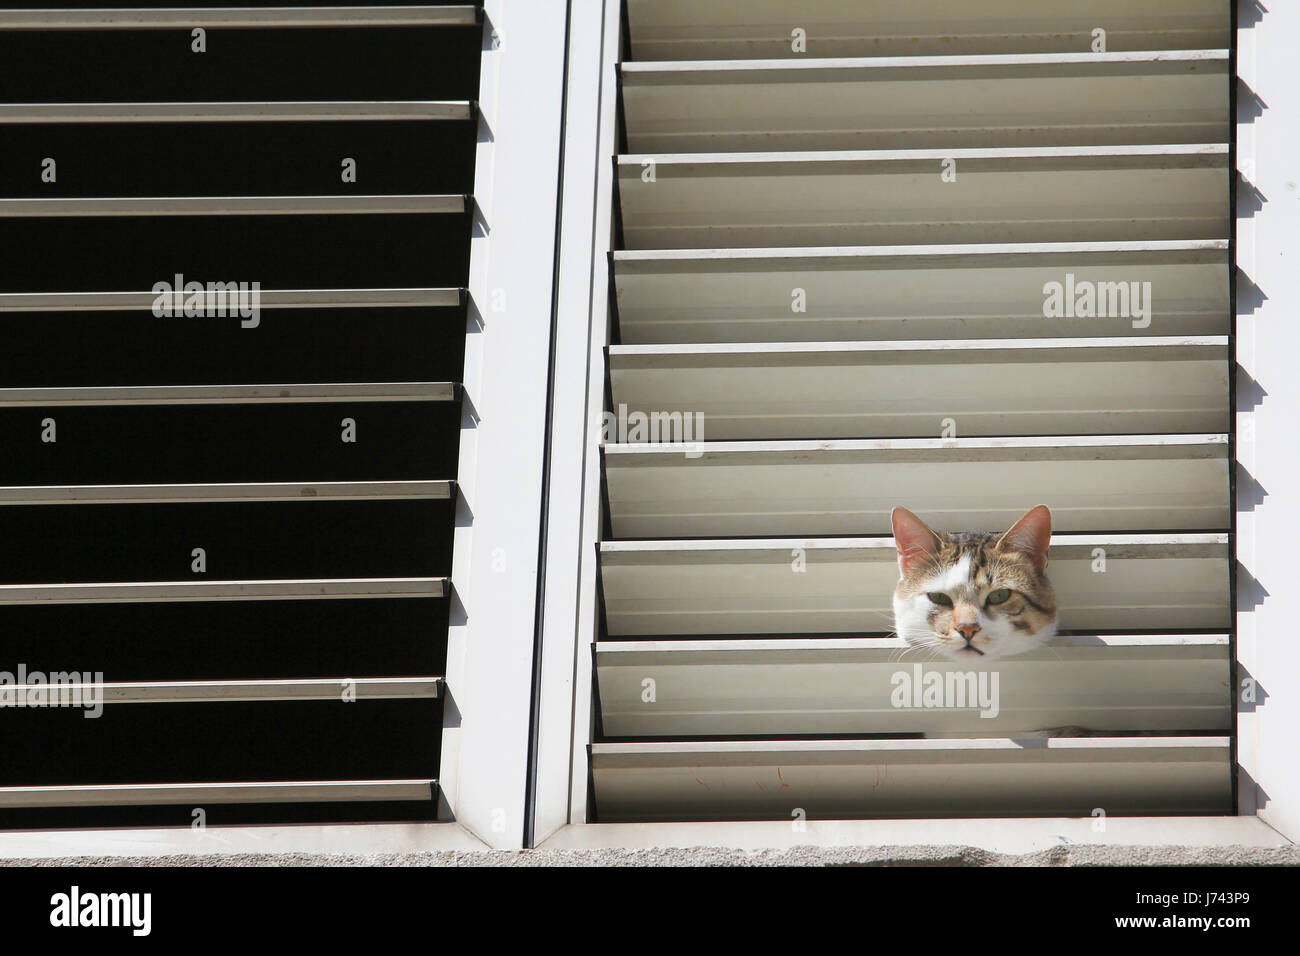 Cat curiosity. Cat at window. Stock Photo